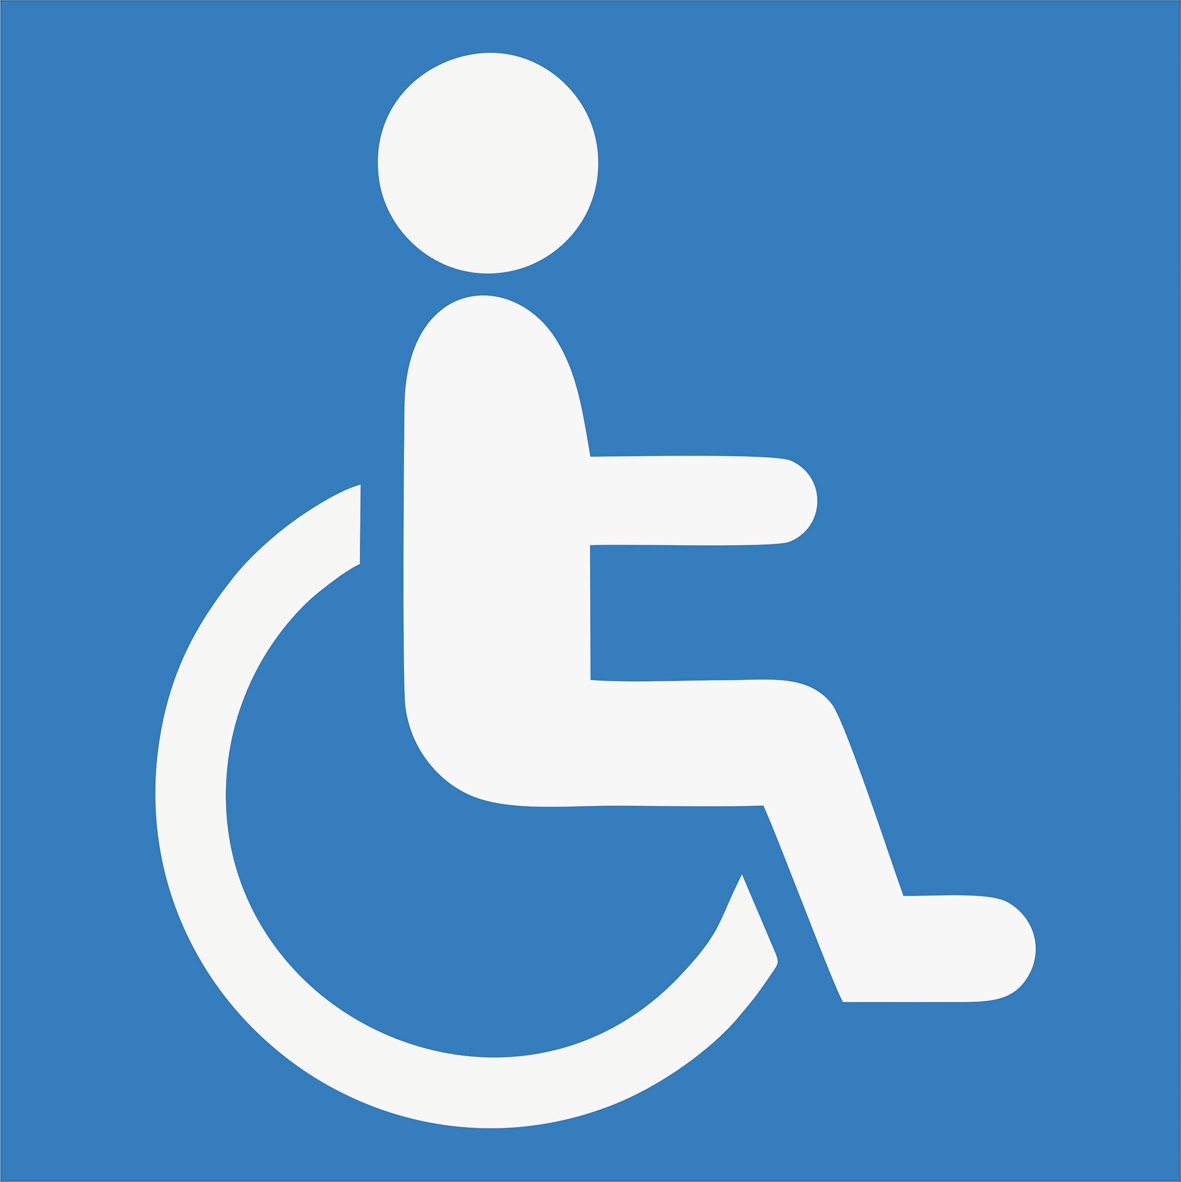 Наклейка инвалид